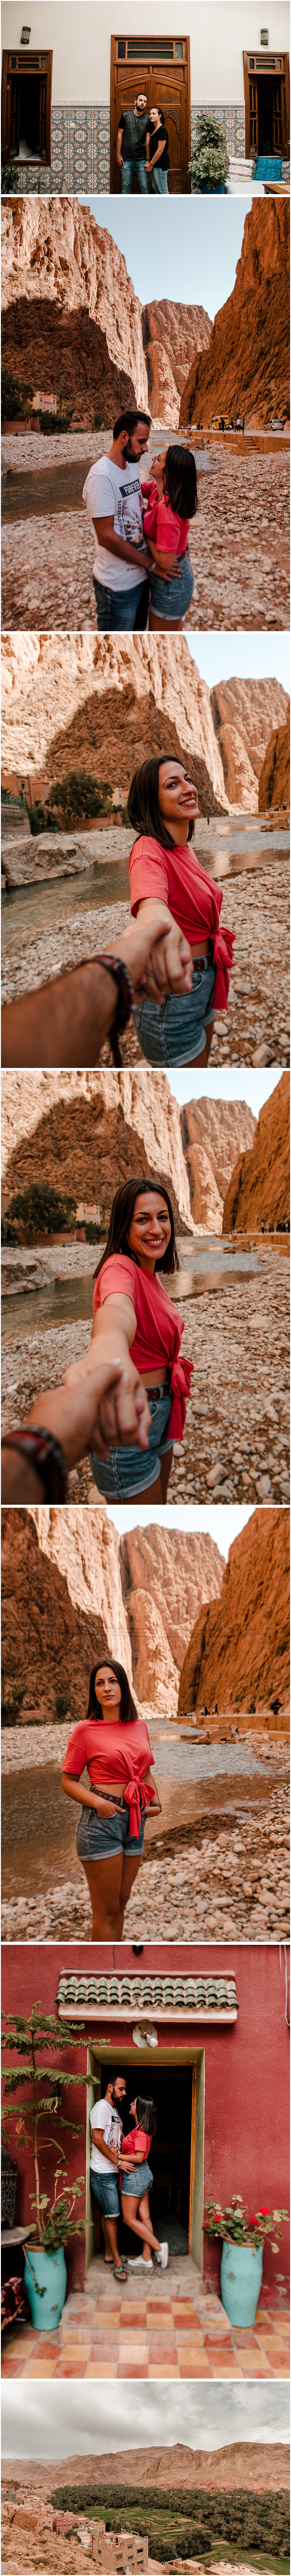 sesion fotografica de pareja por Marruecos